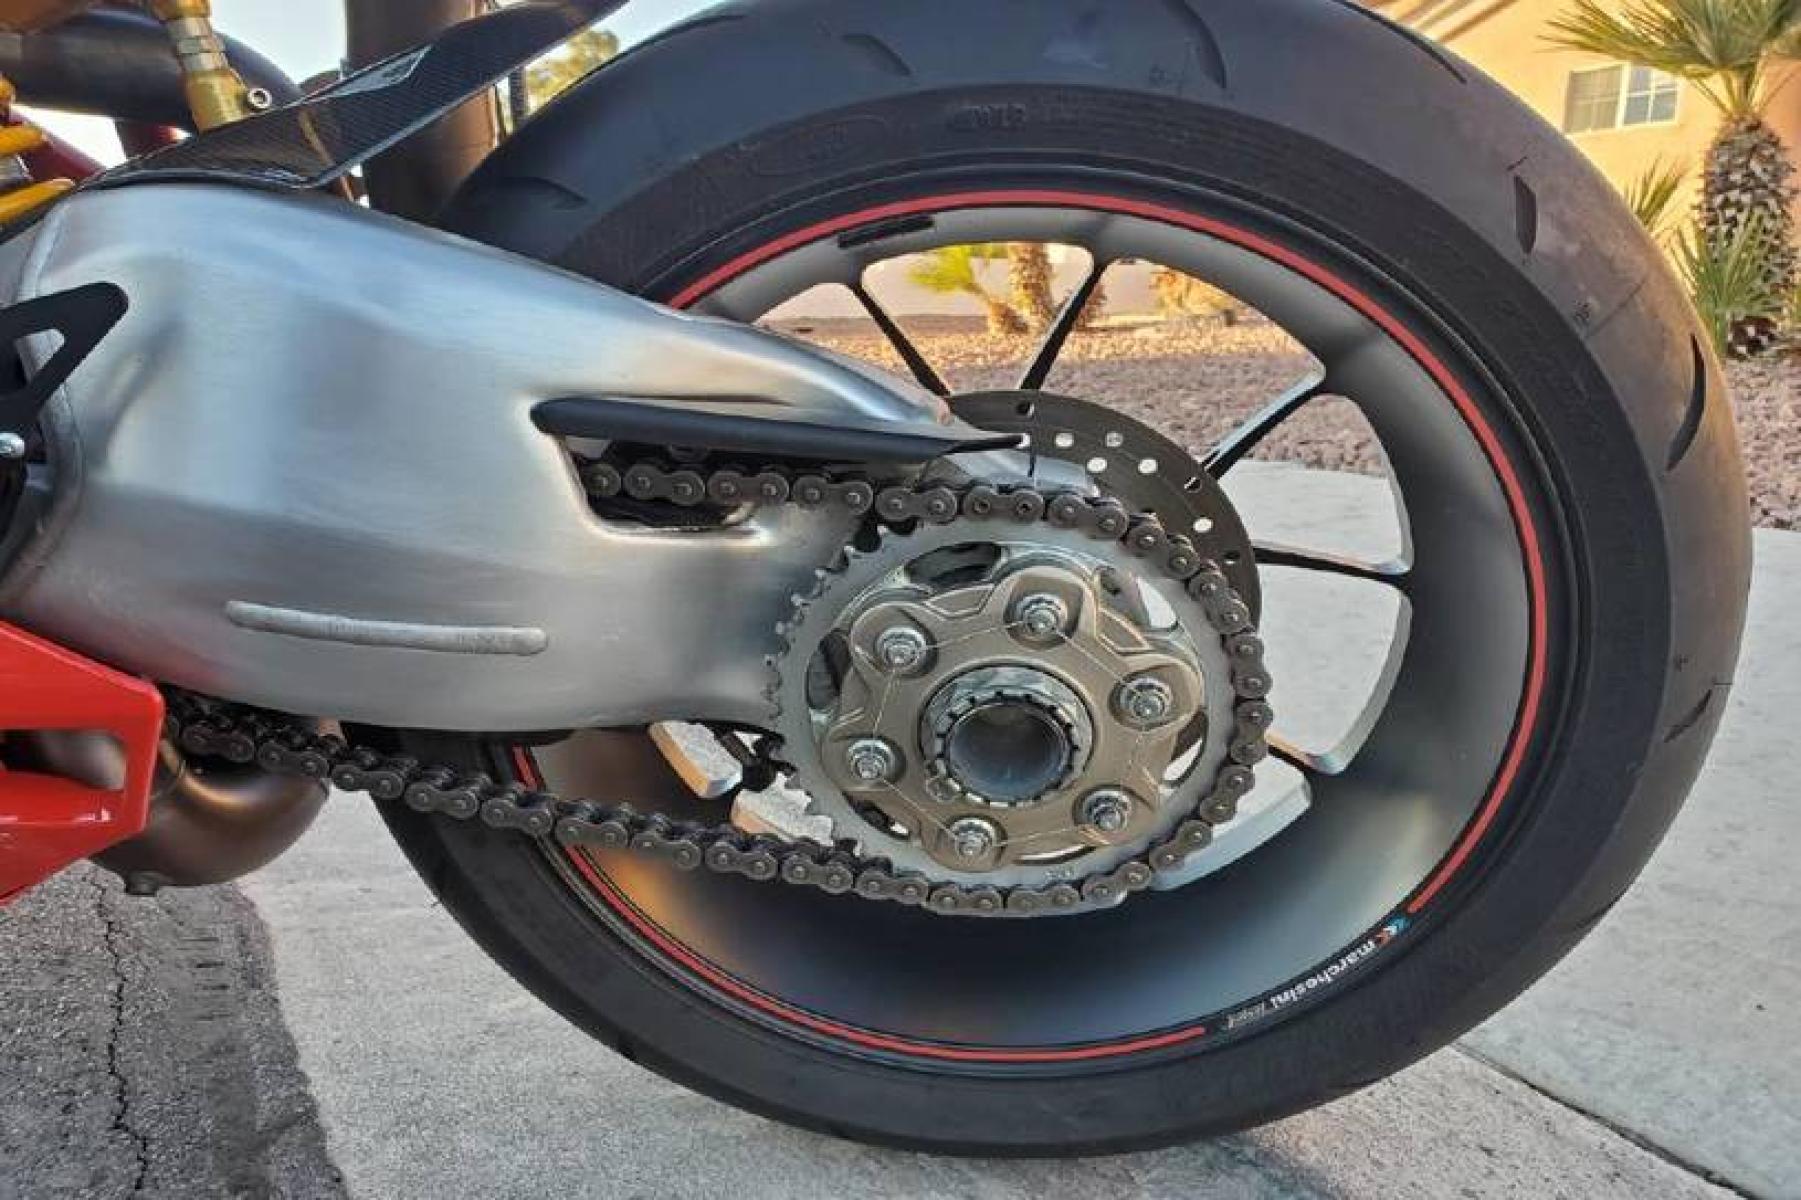 2008 Ducati 1099 S S (ZDM1XBEW18B) with an 1,098 cc L twin engine, Six-Speed Dry Clutch transmission, located at 3160 South Valley View Blvd, Las Vegas, NV, 89146, (888) 750-6845, 36.132458, -115.190247 - b64:VGhlIER1Y2F0aSAxMDk4UyBib2FzdHMgc29tZSBnb3JnZW91cyBib2R5d29yayBhbmQgc2xpY2sgZGVzaWduIGN1ZXMsIGJ1dCBpdHMgcmVhbCBtYXN0ZXJwaWVjZSBsaWVzIGJlbmVhdGggdGhvc2UgcHJldHR5IHBsYXN0aWMgcGFuZWxzLiBVbmRlcm5lYXRoIGlzIGEgdHVidWxhciBzdGVlbCB0cmVsbGlzIGZyYW1lIG9wdGltaXplZCBmb3Igc3RpZmZuZXNzLCBhbmQgYW4gTC10d2luIGVu - Photo #7